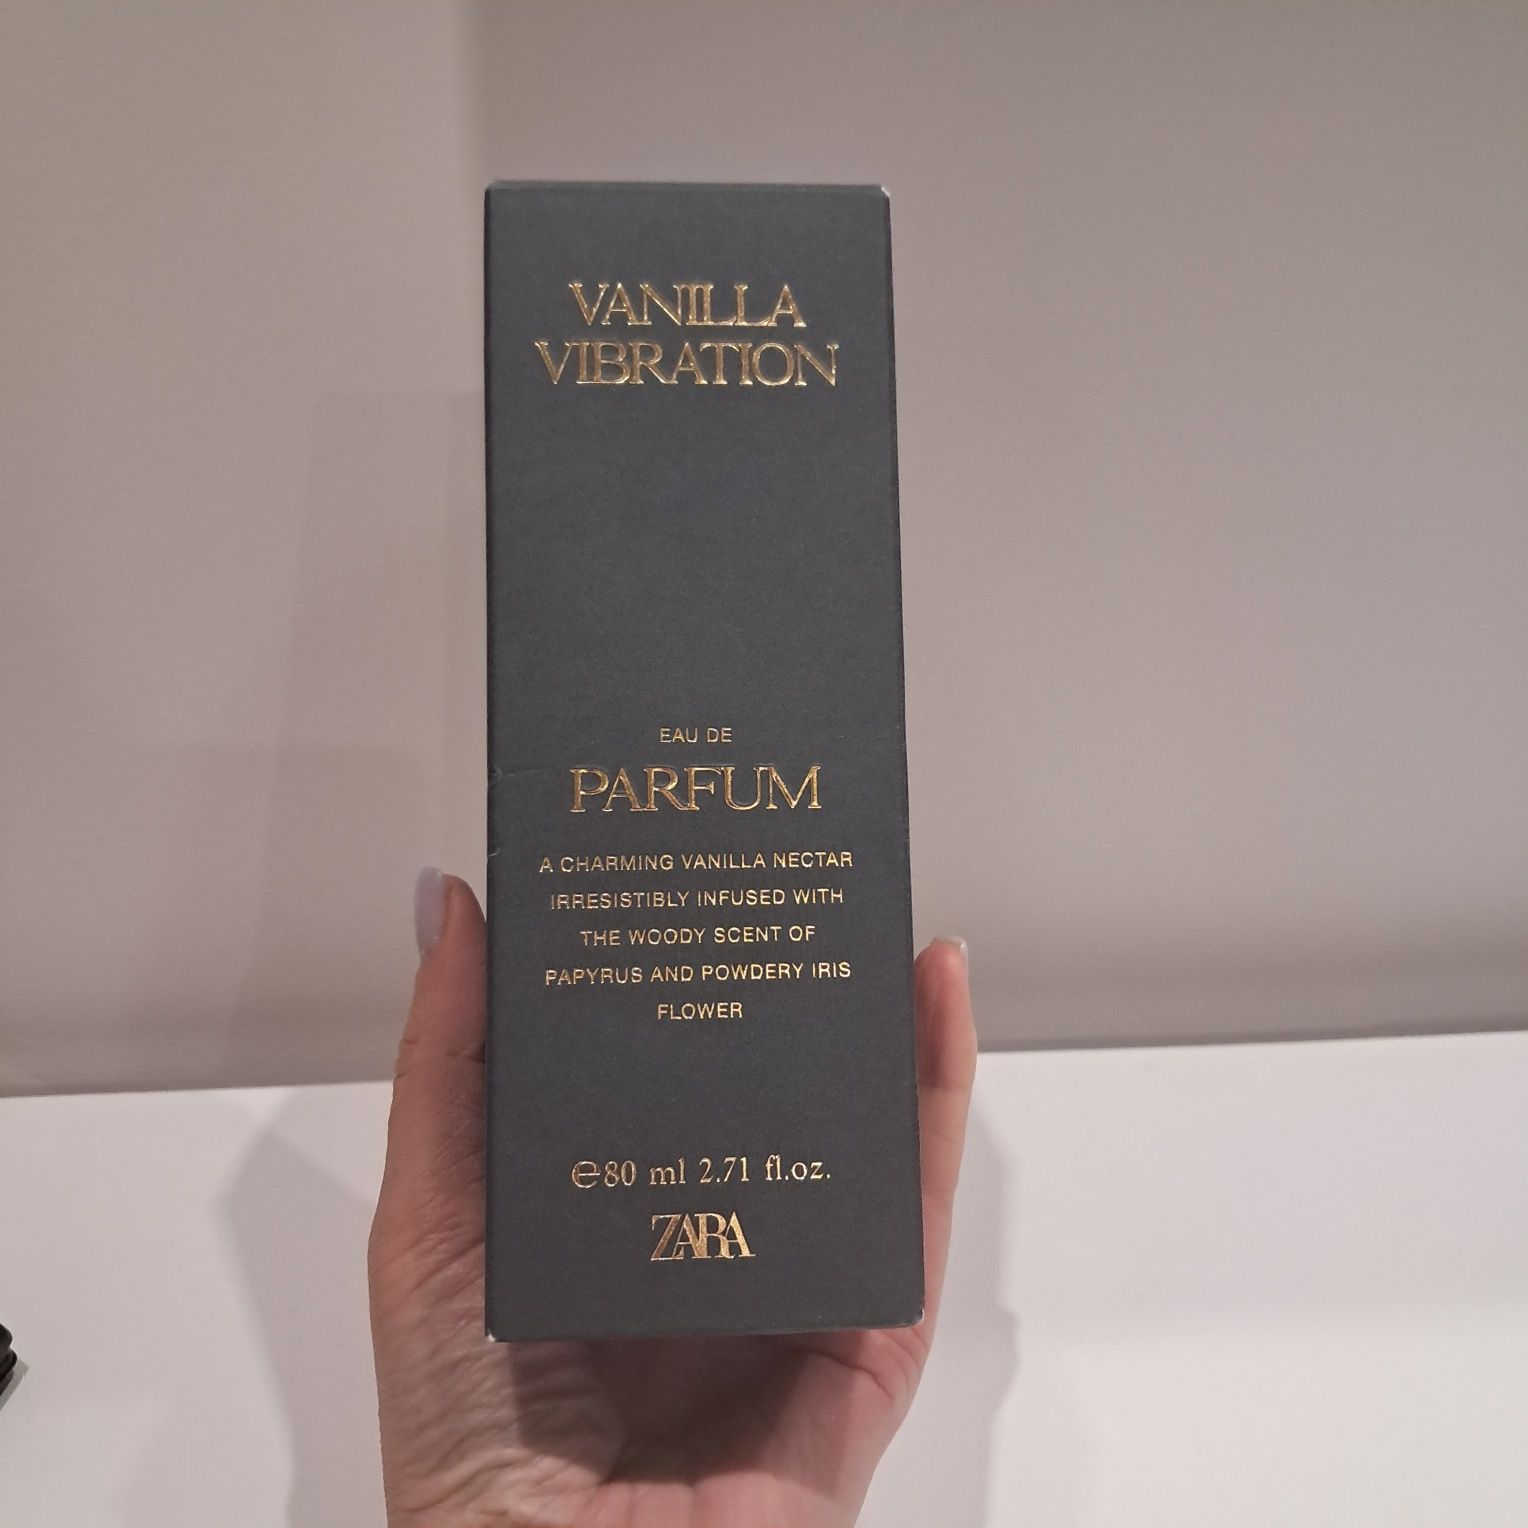 VANILLA VIBRATION парфум ZARA
Аромат для жінок та чоловіків 
Деревн